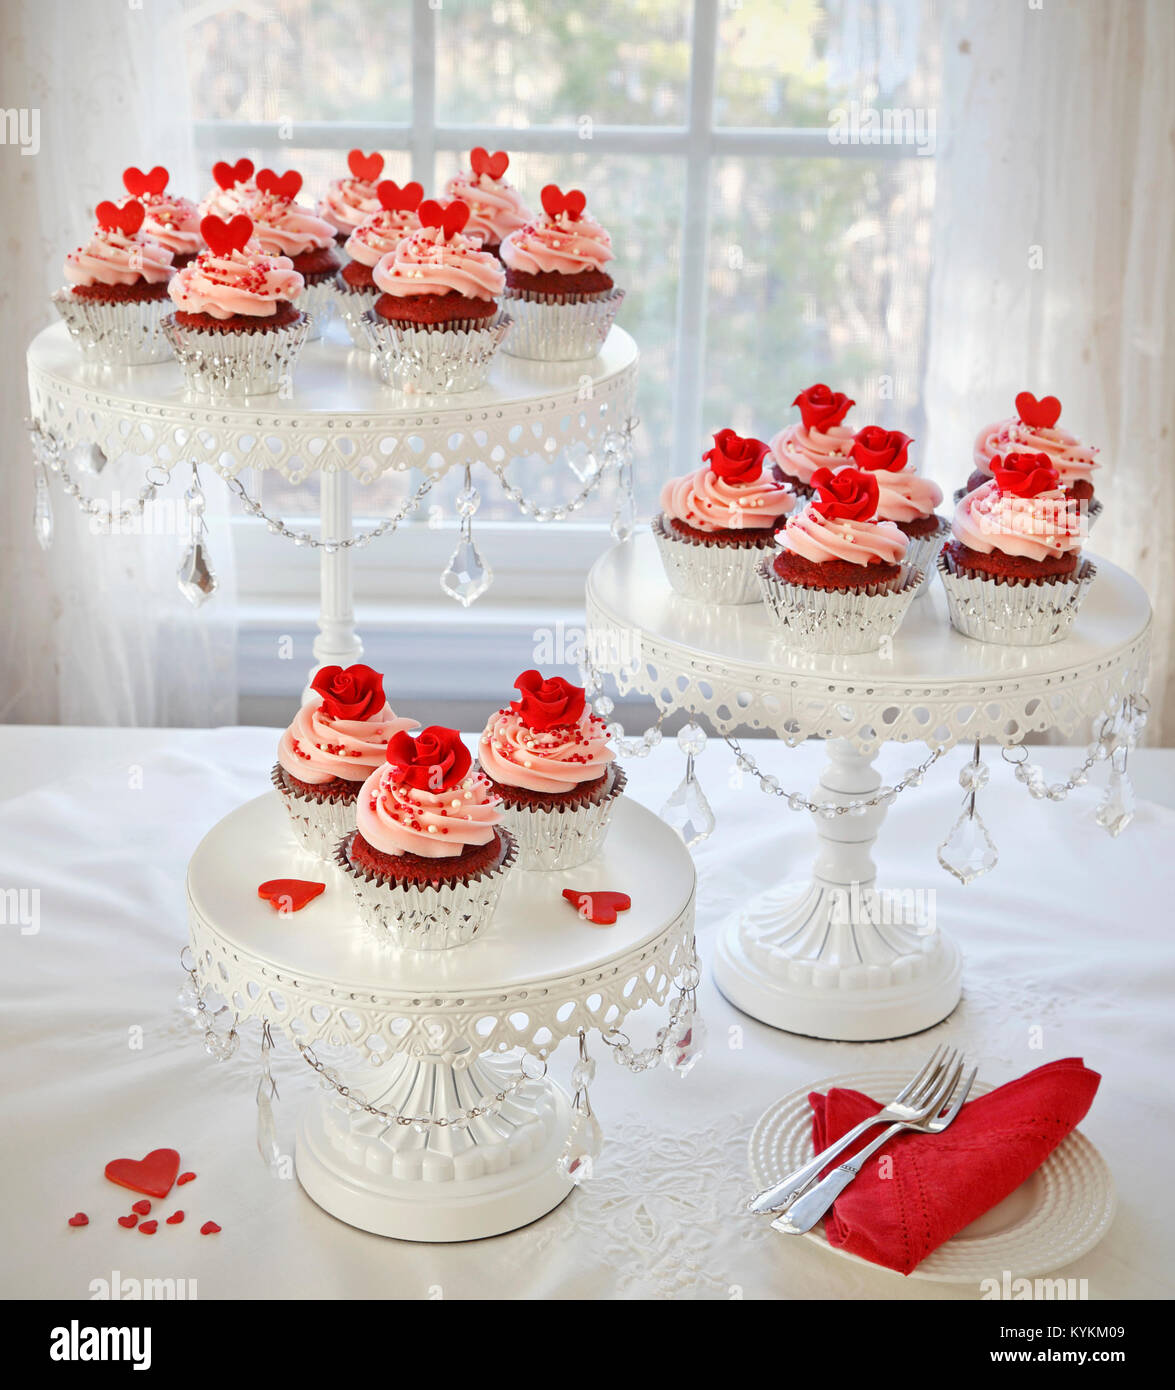 Cupcakes. Red velvet Cupcakes, dekoriert mit roten Rosen und Herzen auf 3-tier cakestand. Stockfoto